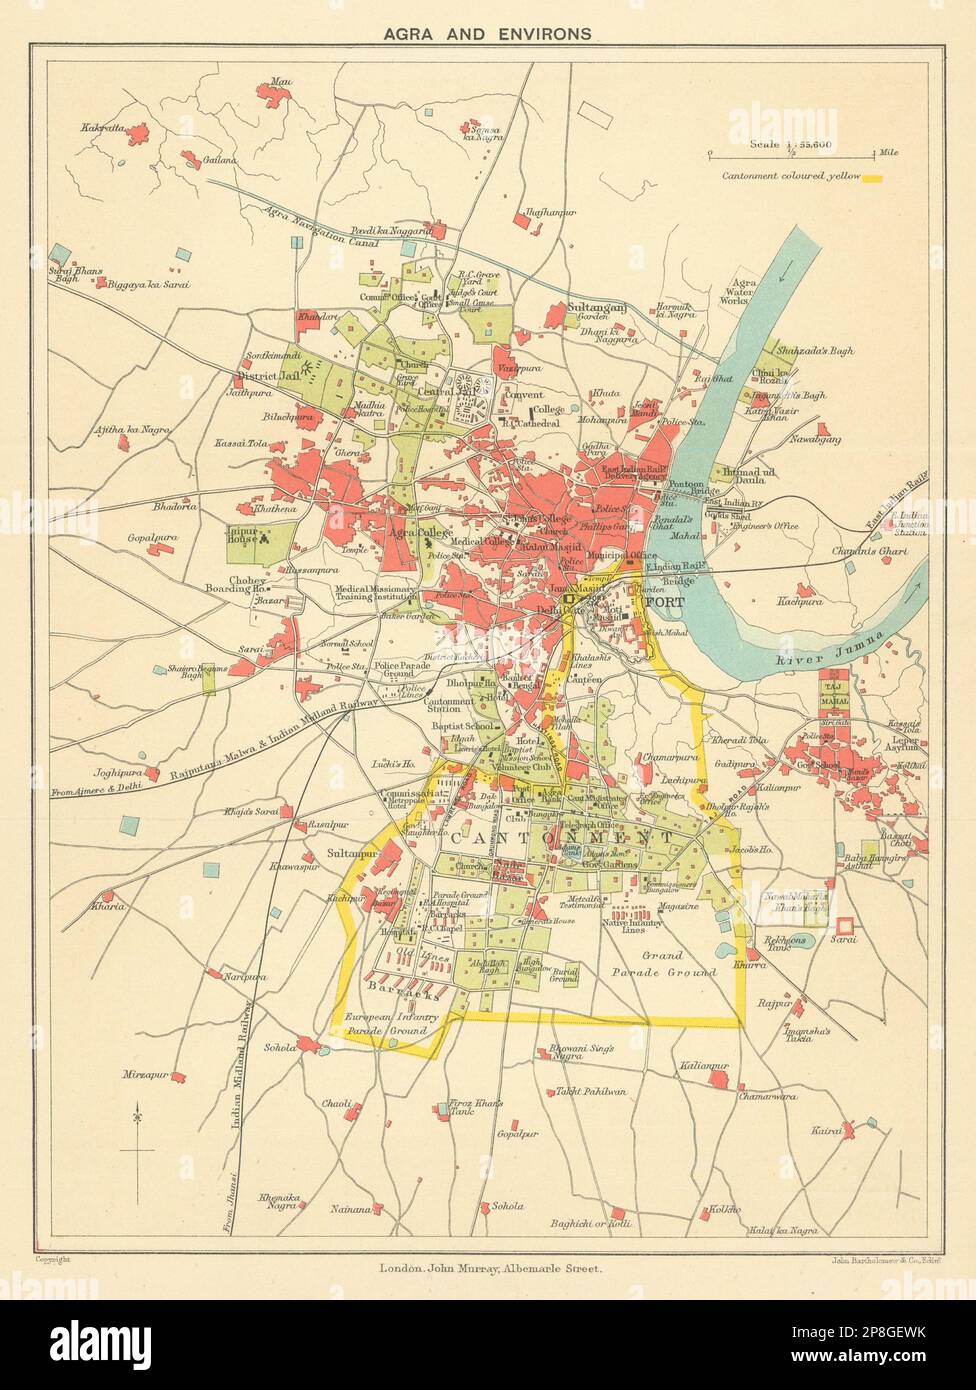 INDE BRITANNIQUE. Agra et environs. Afficher la carte de Cantonment, fort & Taj Mahal 1905 Banque D'Images